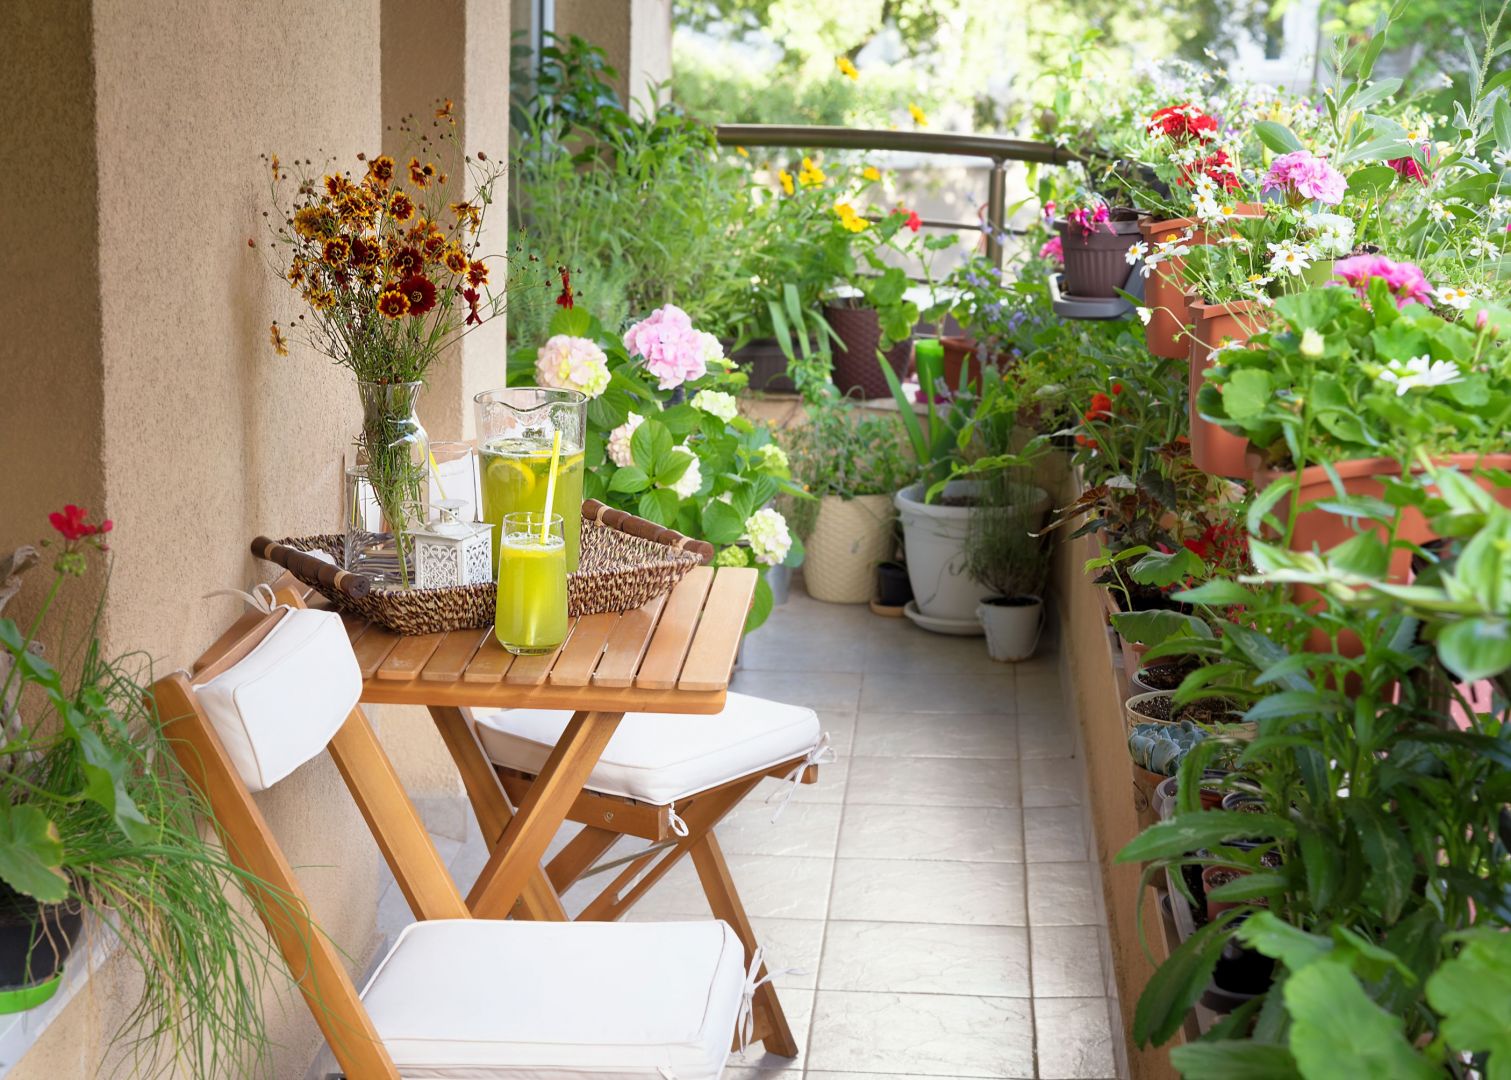 Kwiaty mogą zdobić nasz balkon od wiosny aż do jesieni. Fot. Shutterstock